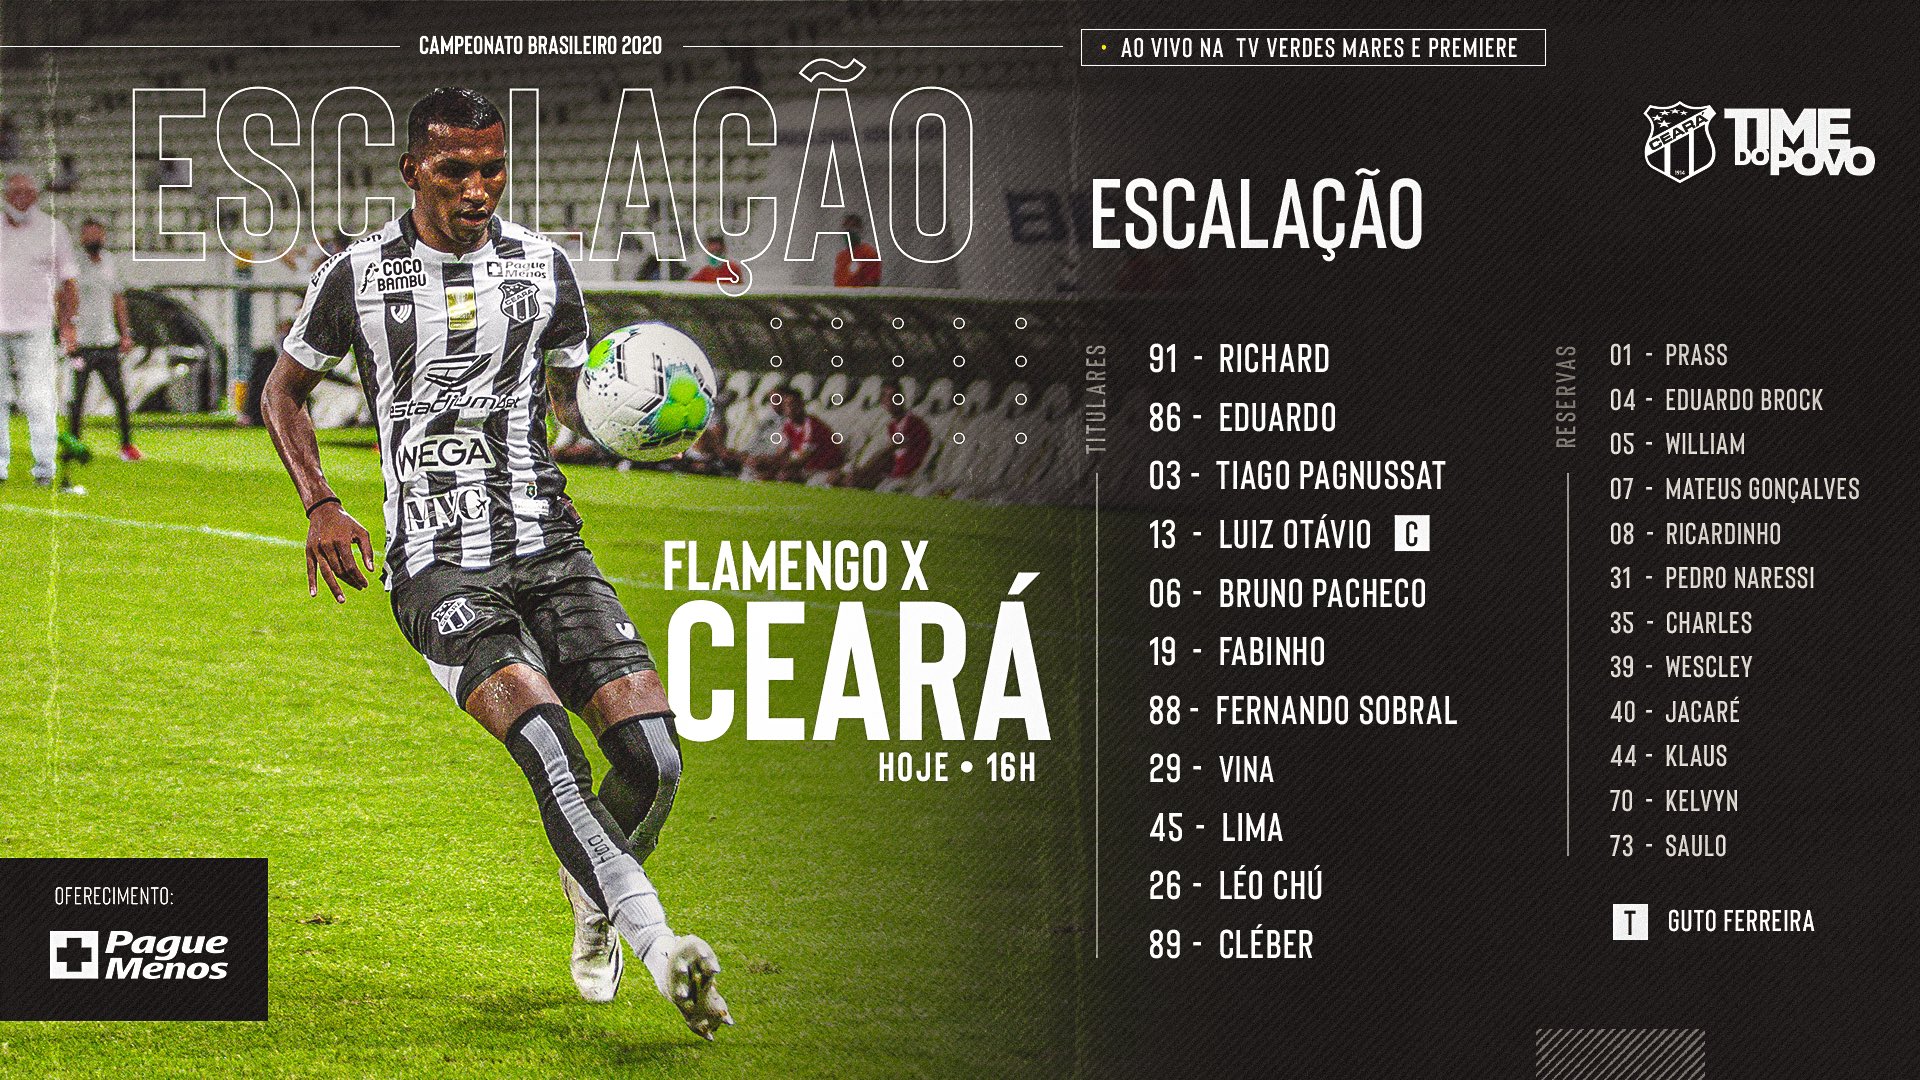 Ceará Sporting Club on X: Chegou Moto Grau, sua dose diária de